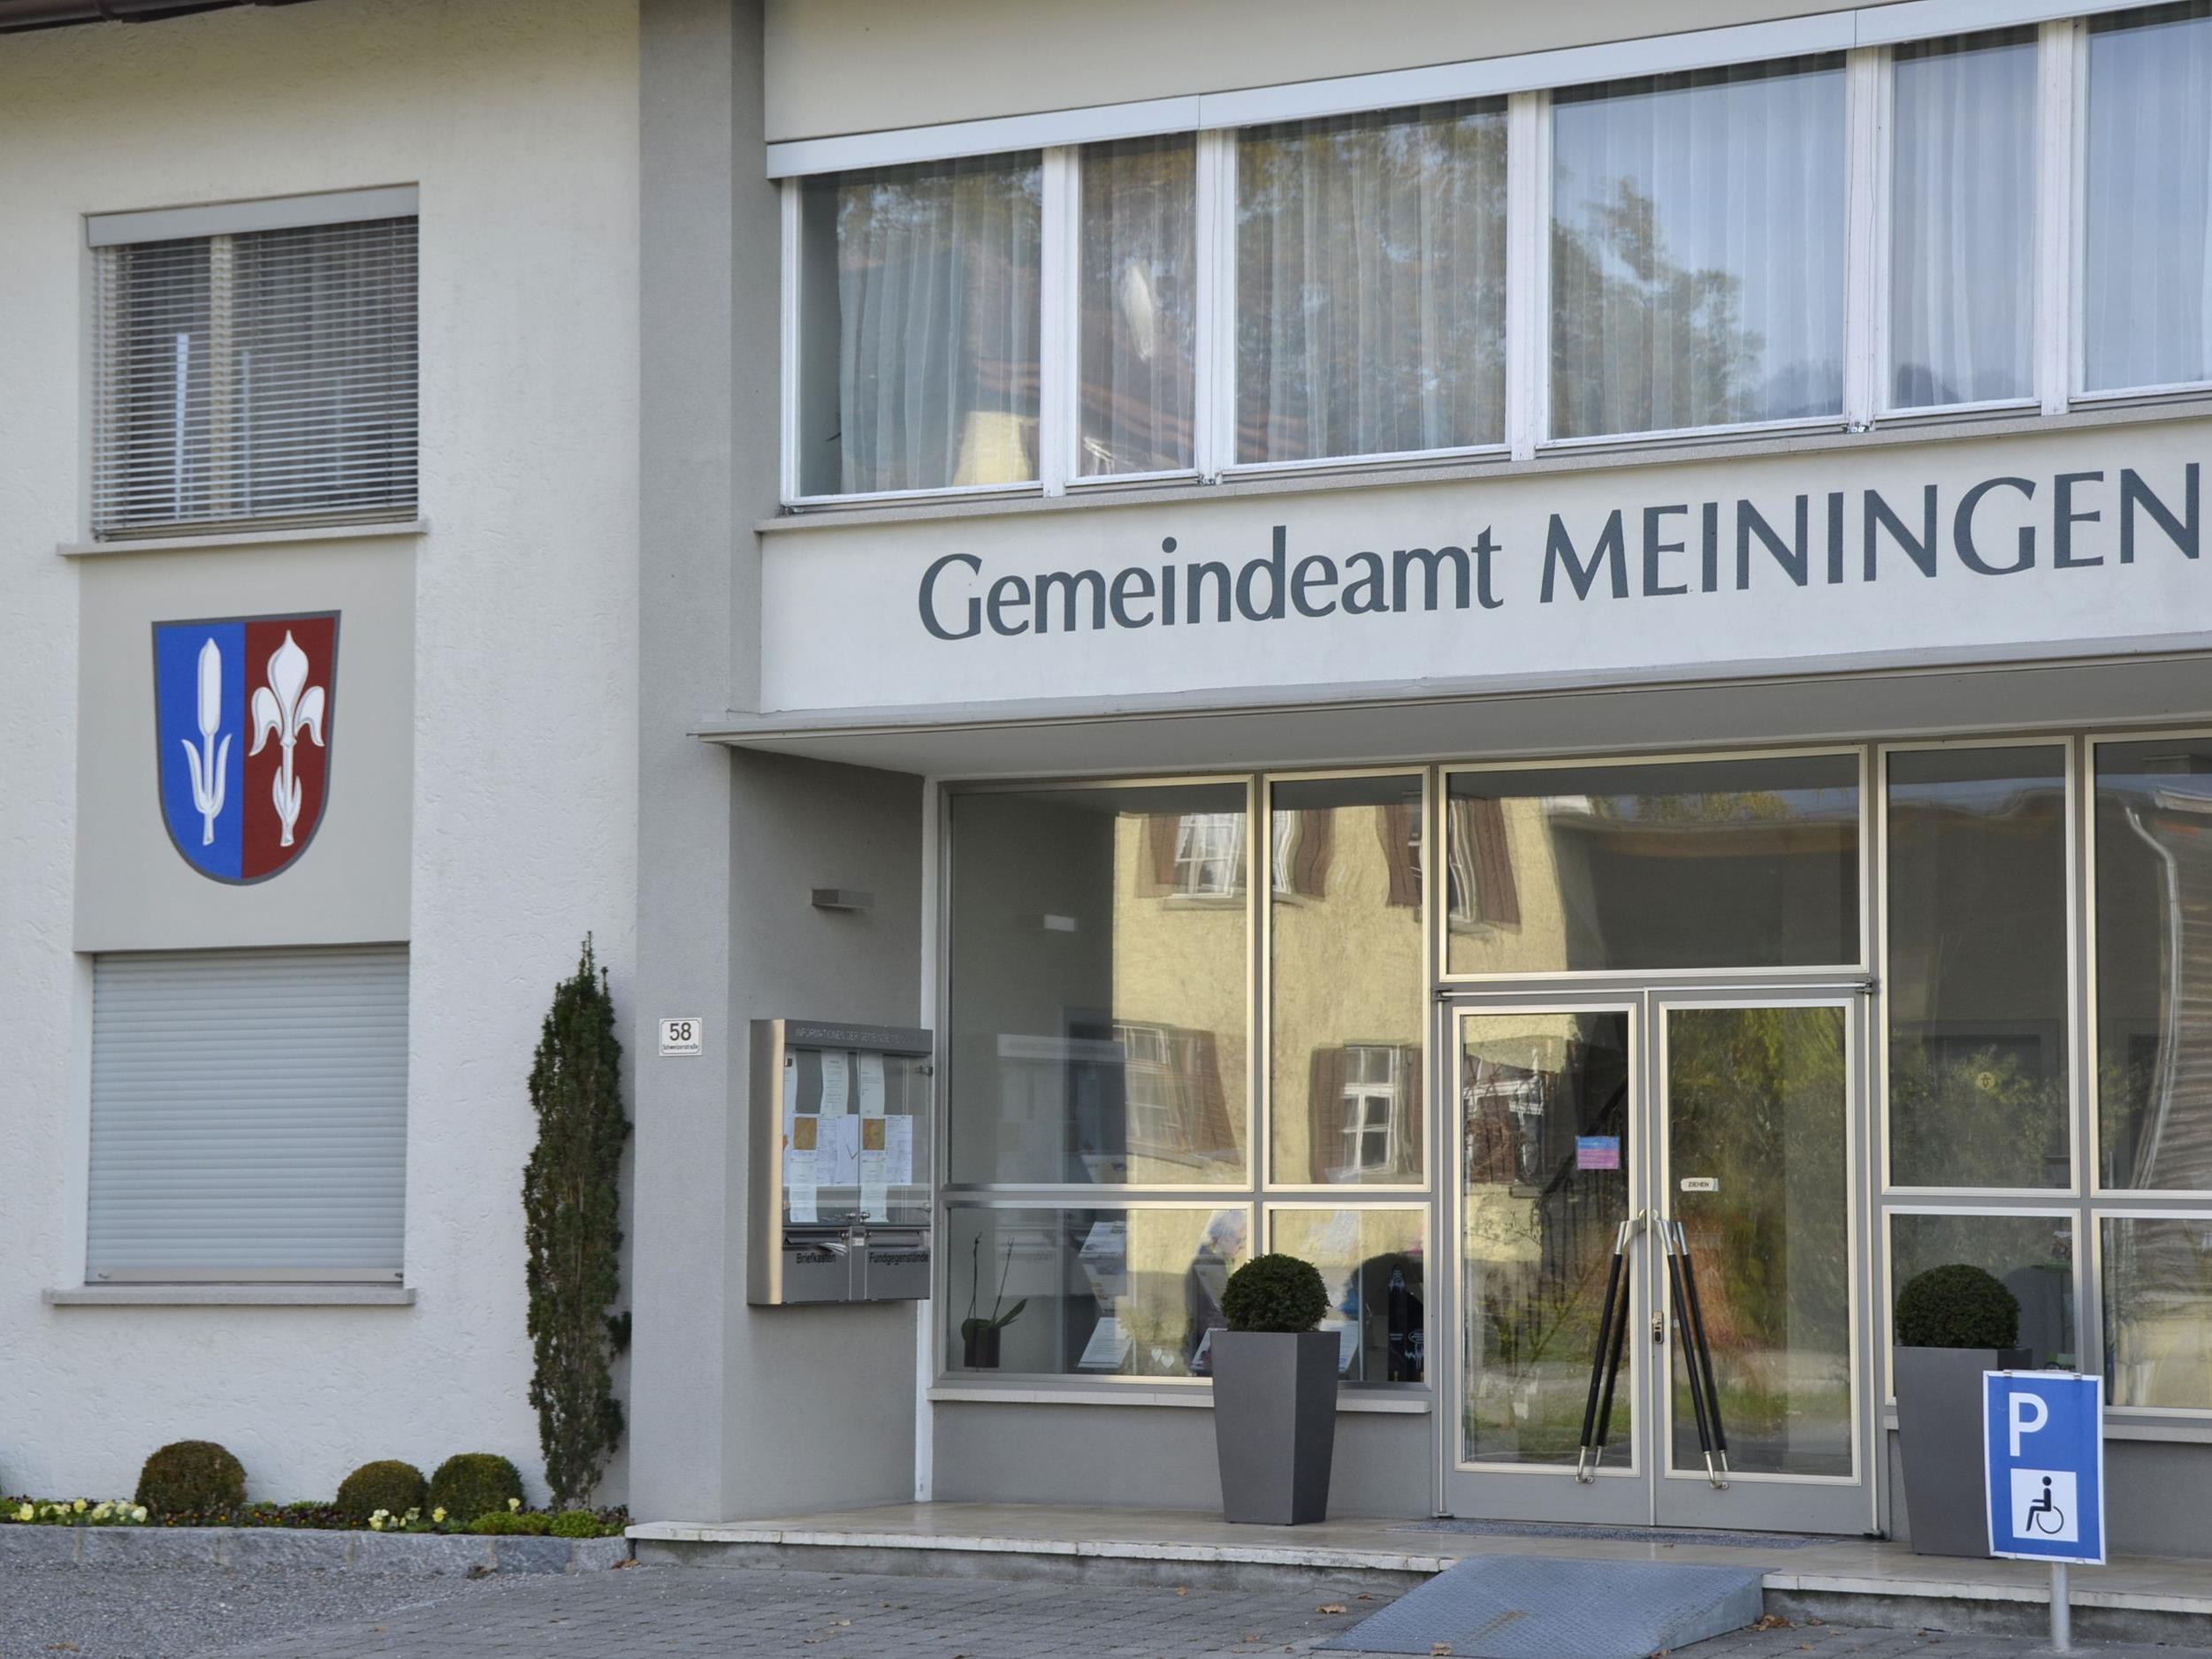 Gemeindeamt Meininen